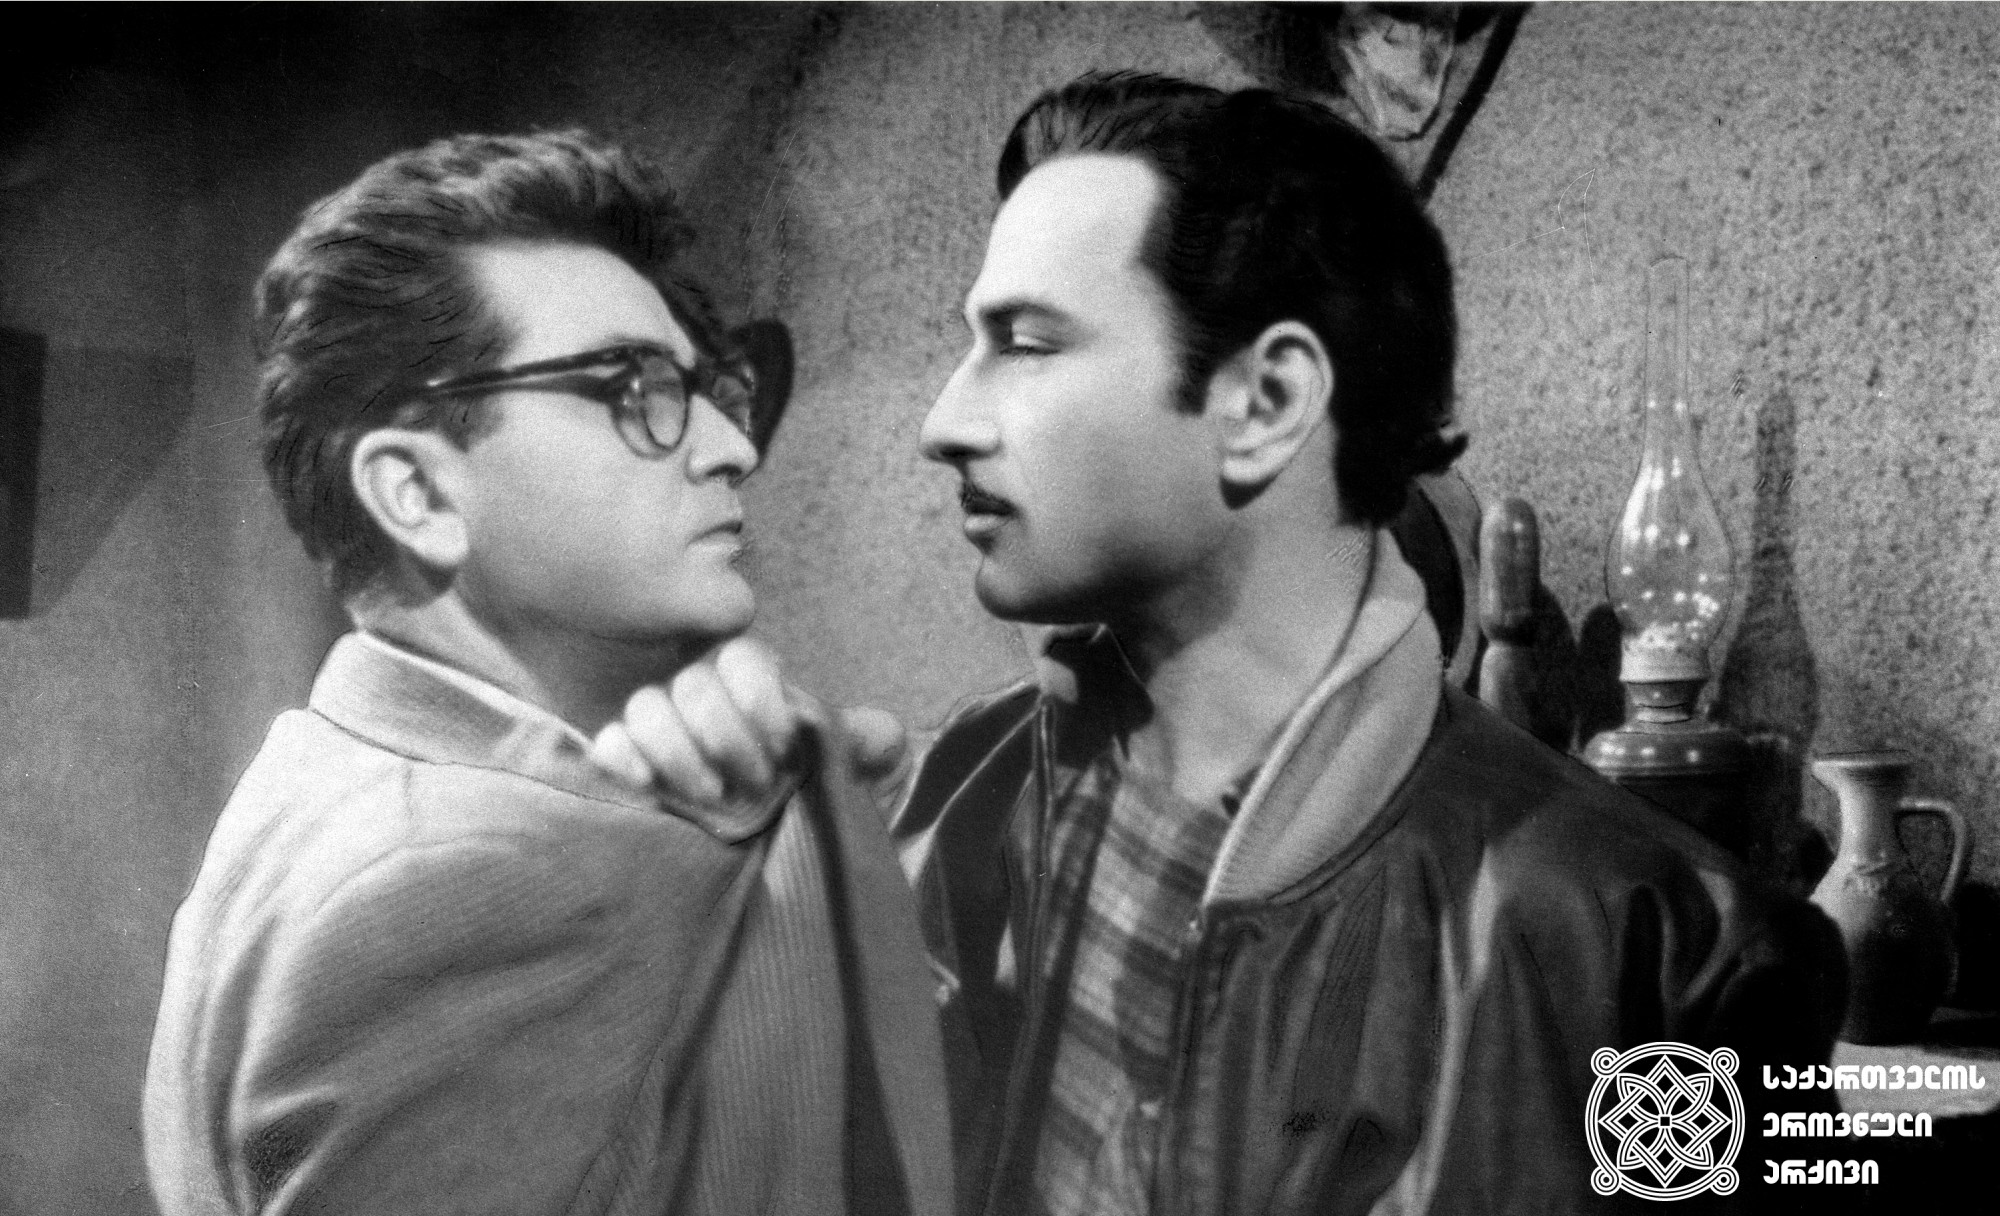 Მხატრული ფილმი „თხუნელა“. ადამიანი - რამაზ ჩხიკვაძე. <br>
1962 წელი. <br>
Feature film "Tkhunela". Ramaz Chkhikvadze as a Human. <br>
1962. <br>